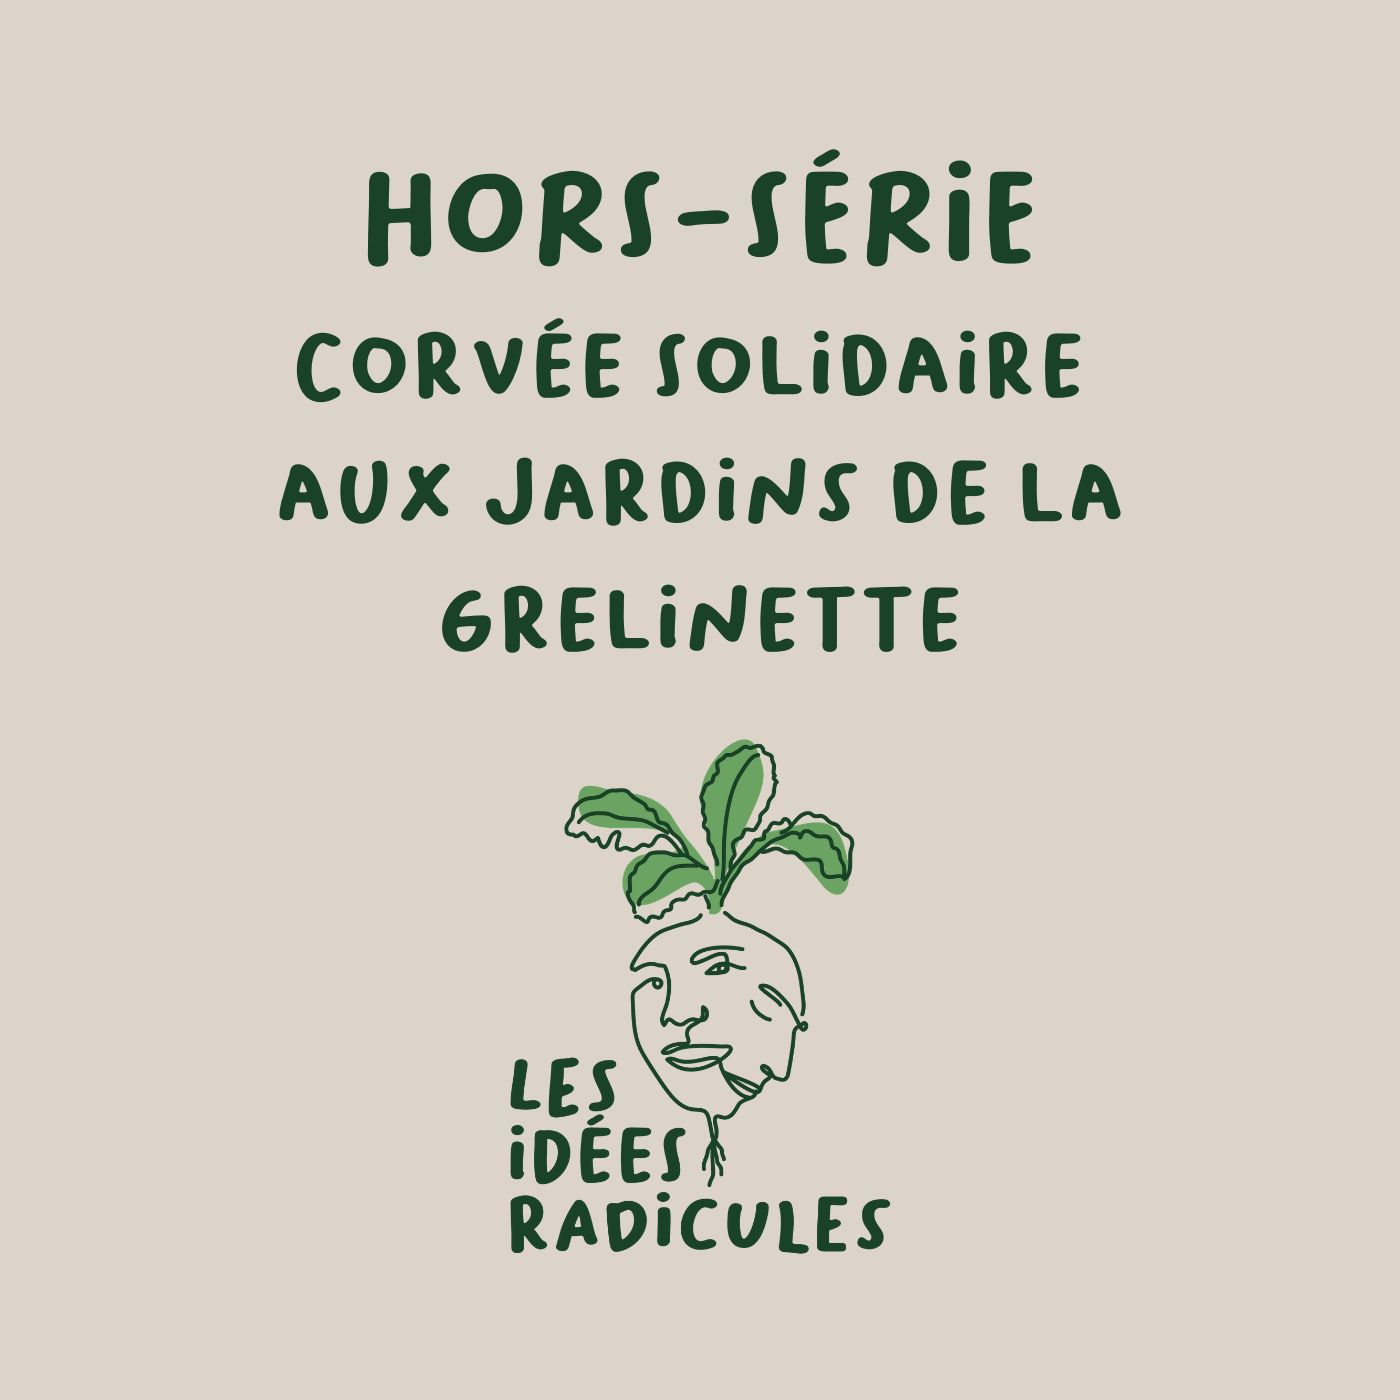 Épisode HORS-SÉRIE - La corvée solidaire aux Jardins de la Grelinette